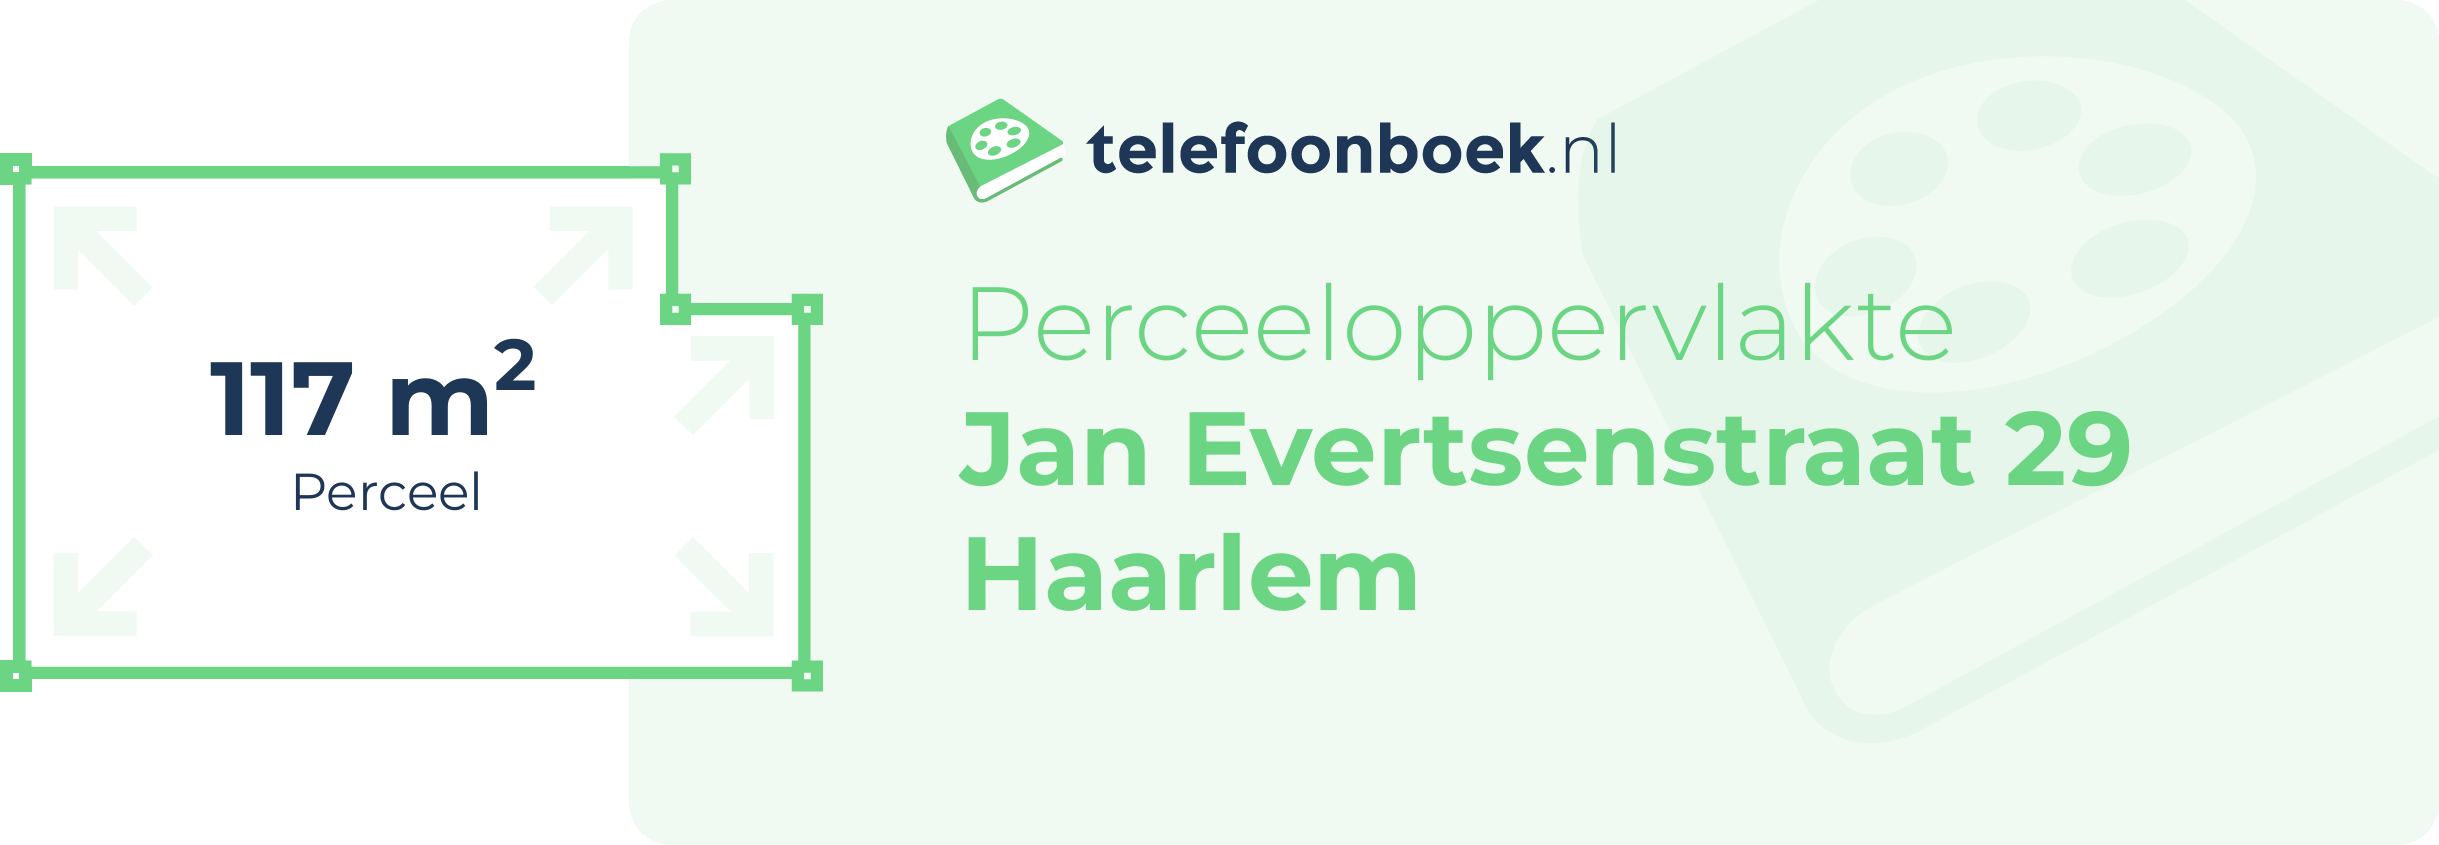 Perceeloppervlakte Jan Evertsenstraat 29 Haarlem